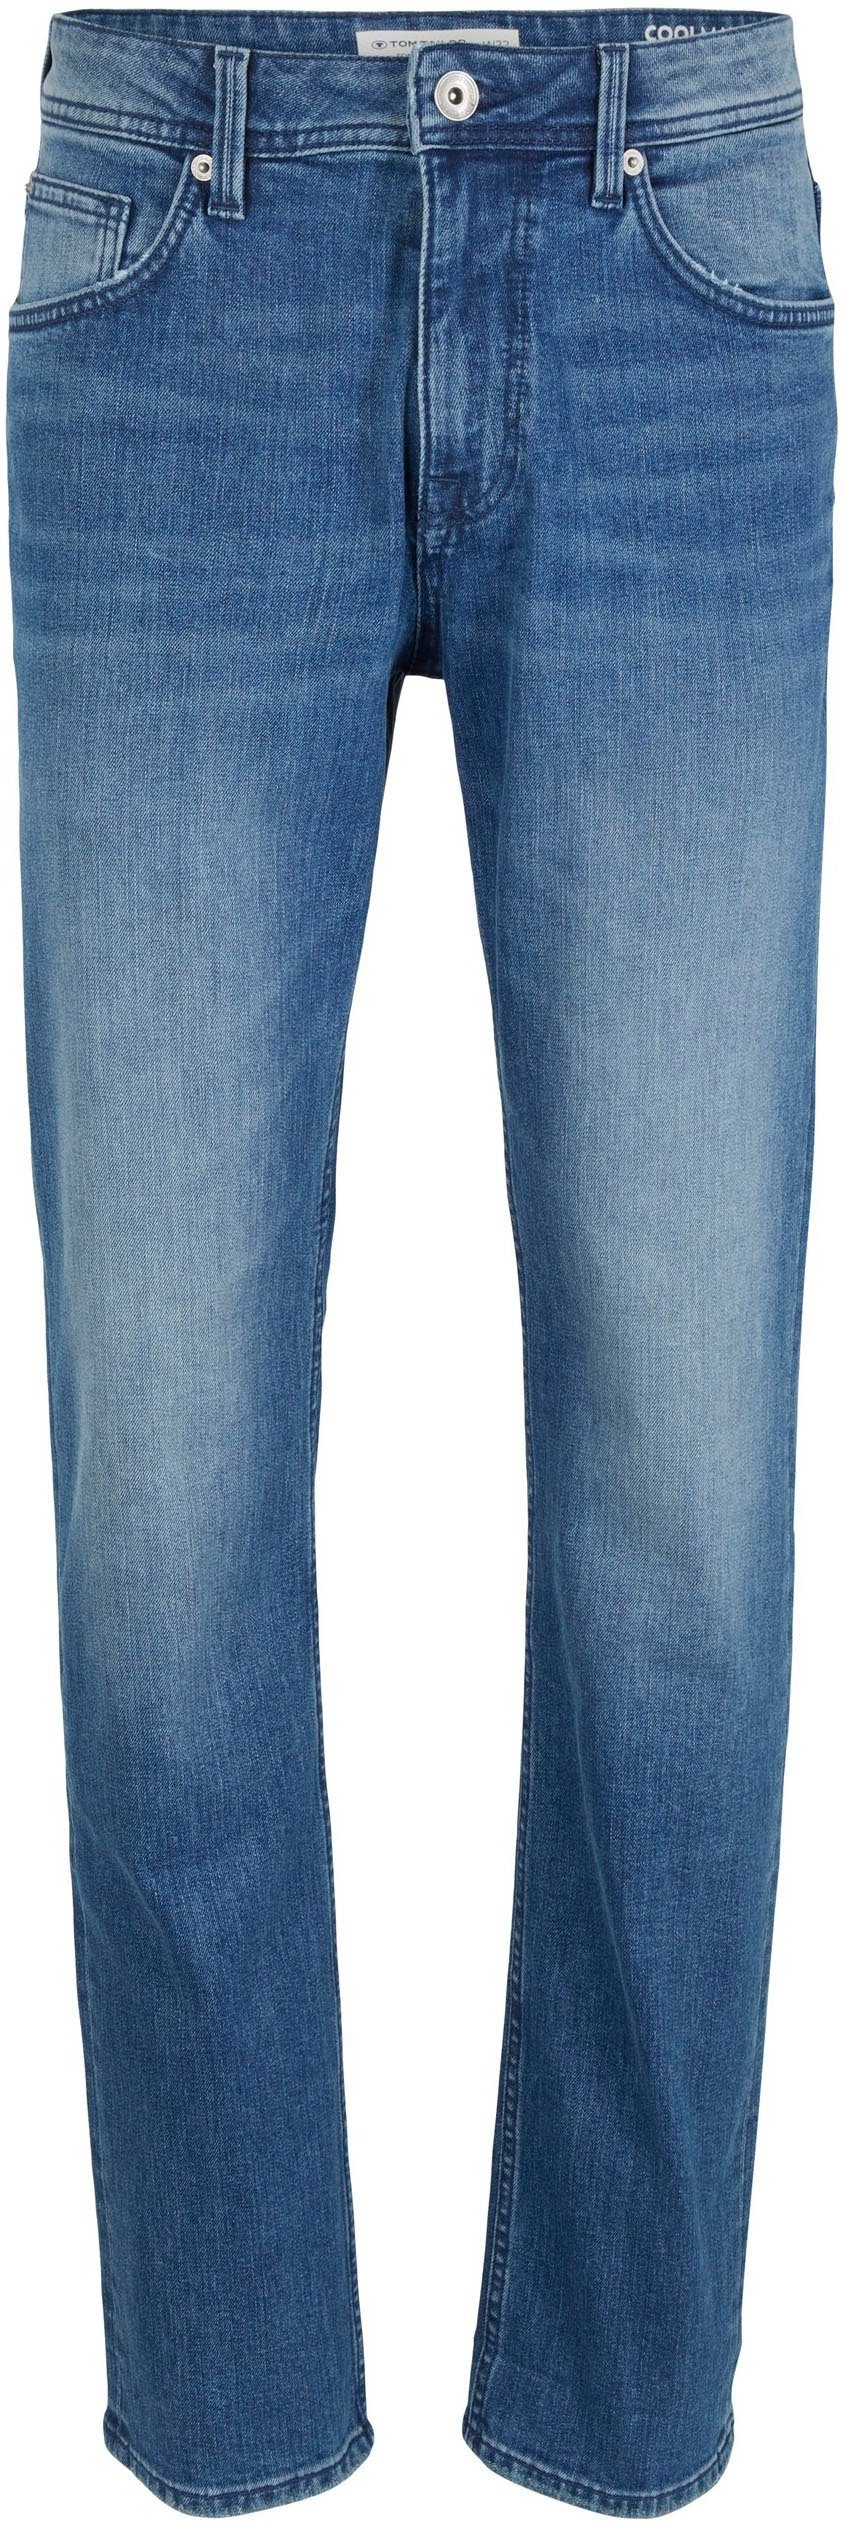 TOM TAILOR 5-Pocket-Jeans JOSH COOLMAX® stone mid used